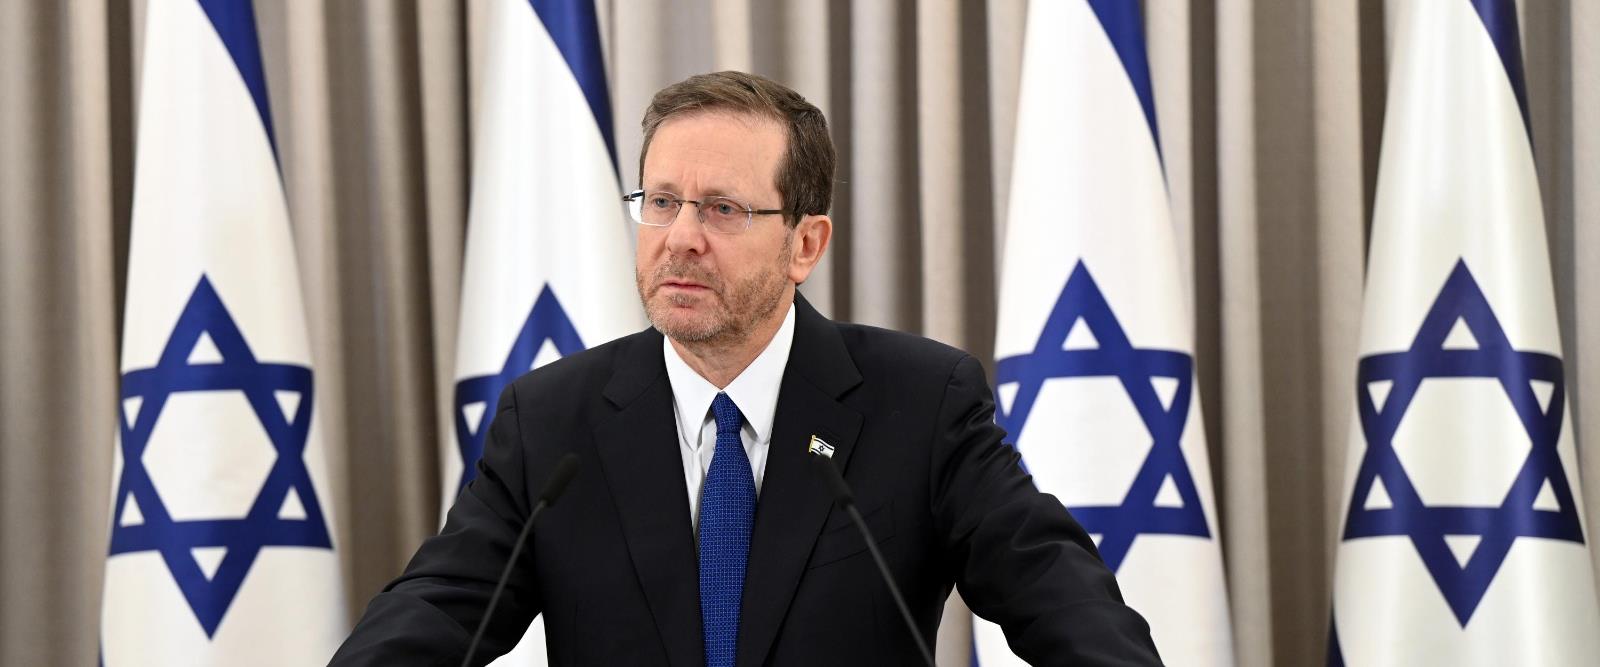 Le président d'Israël : nous n'avons jamais été aussi proches d'un accord